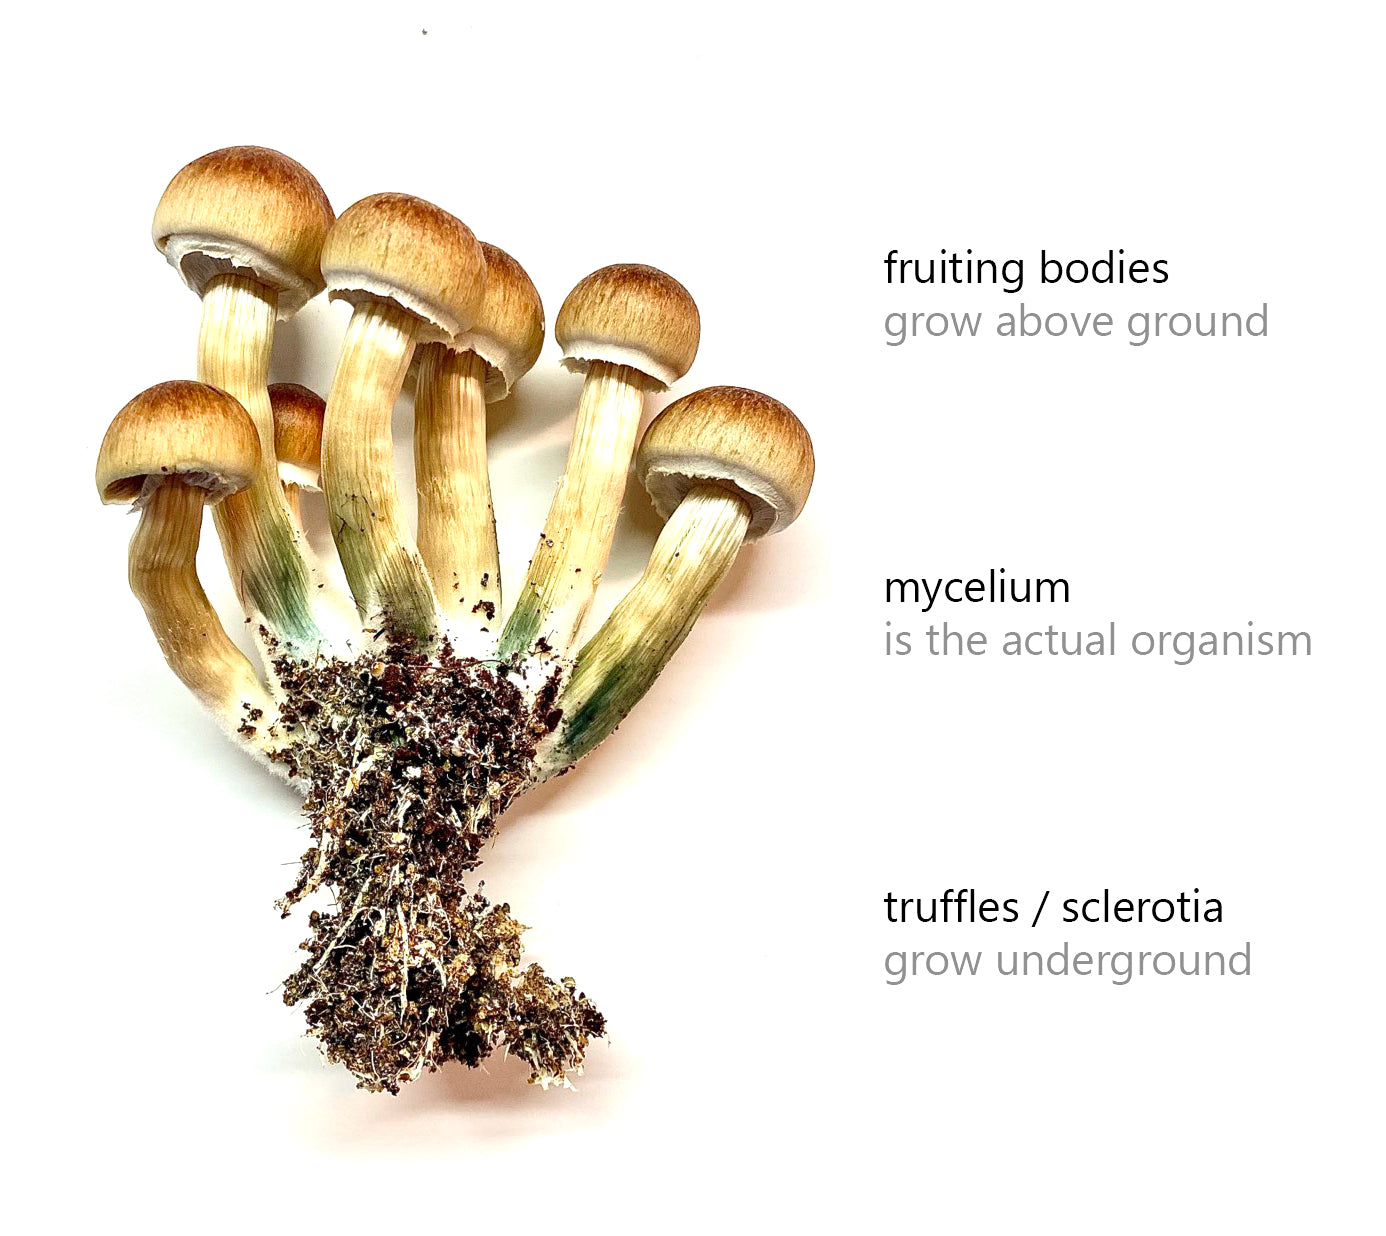 Magic Mushroom odlingsguide för nybörjare